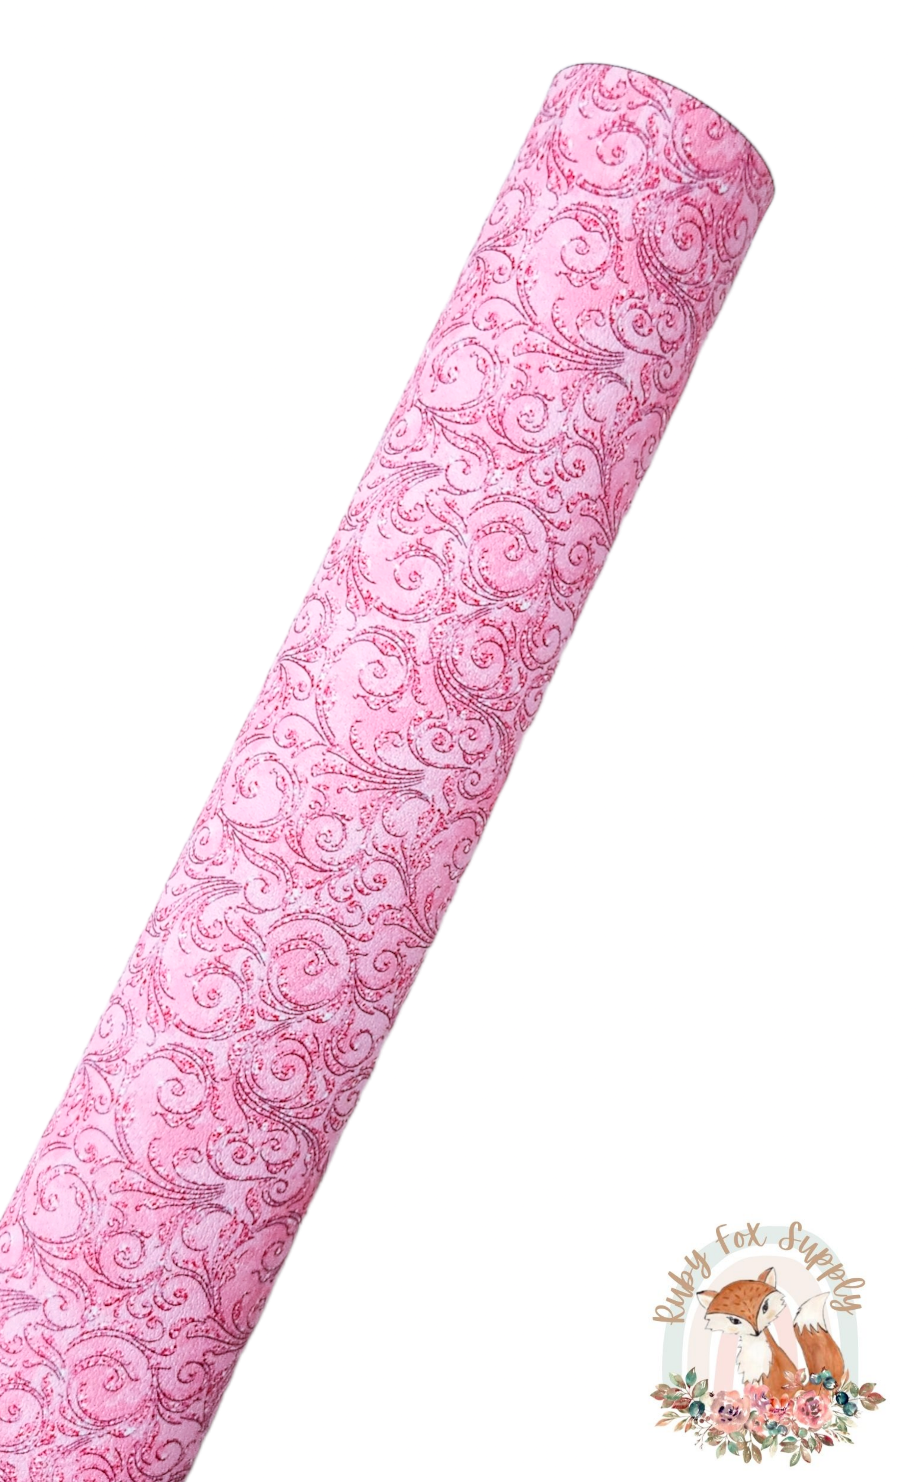 Fancy Pink Swirls 9x12 faux leather sheet